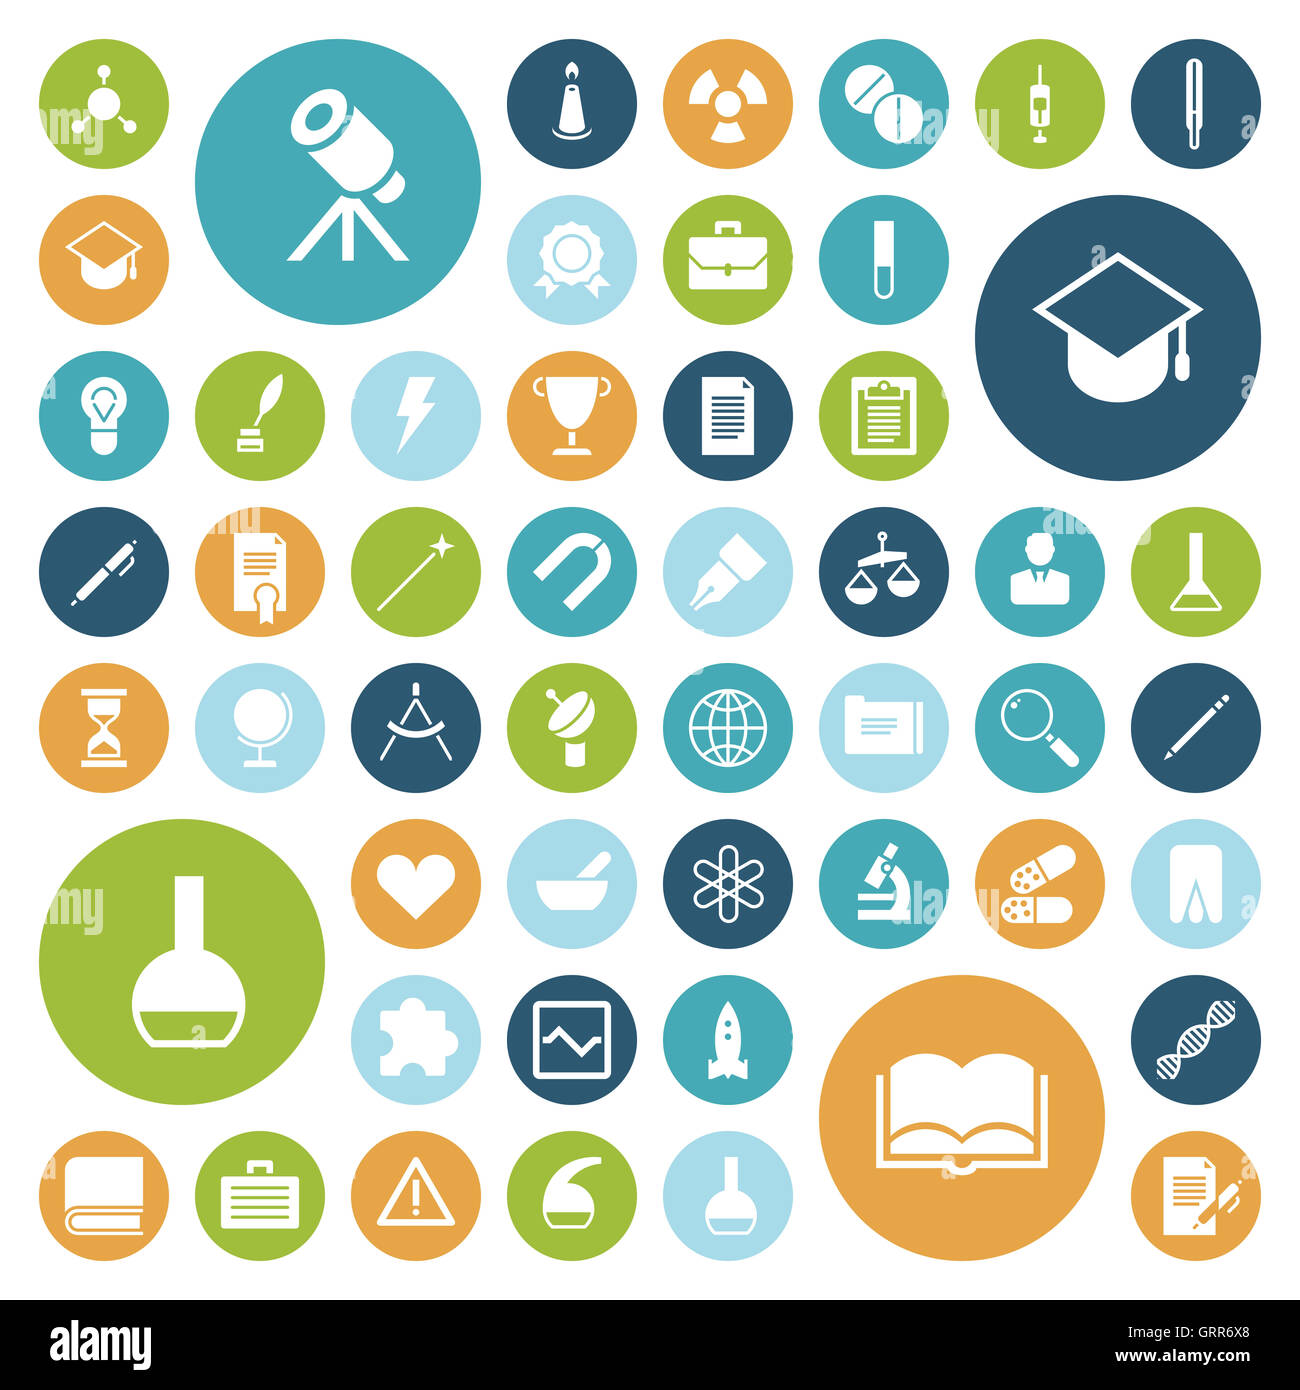 Flache Design-Ikonen für Bildung, Wissenschaft und Medizin. Stockfoto